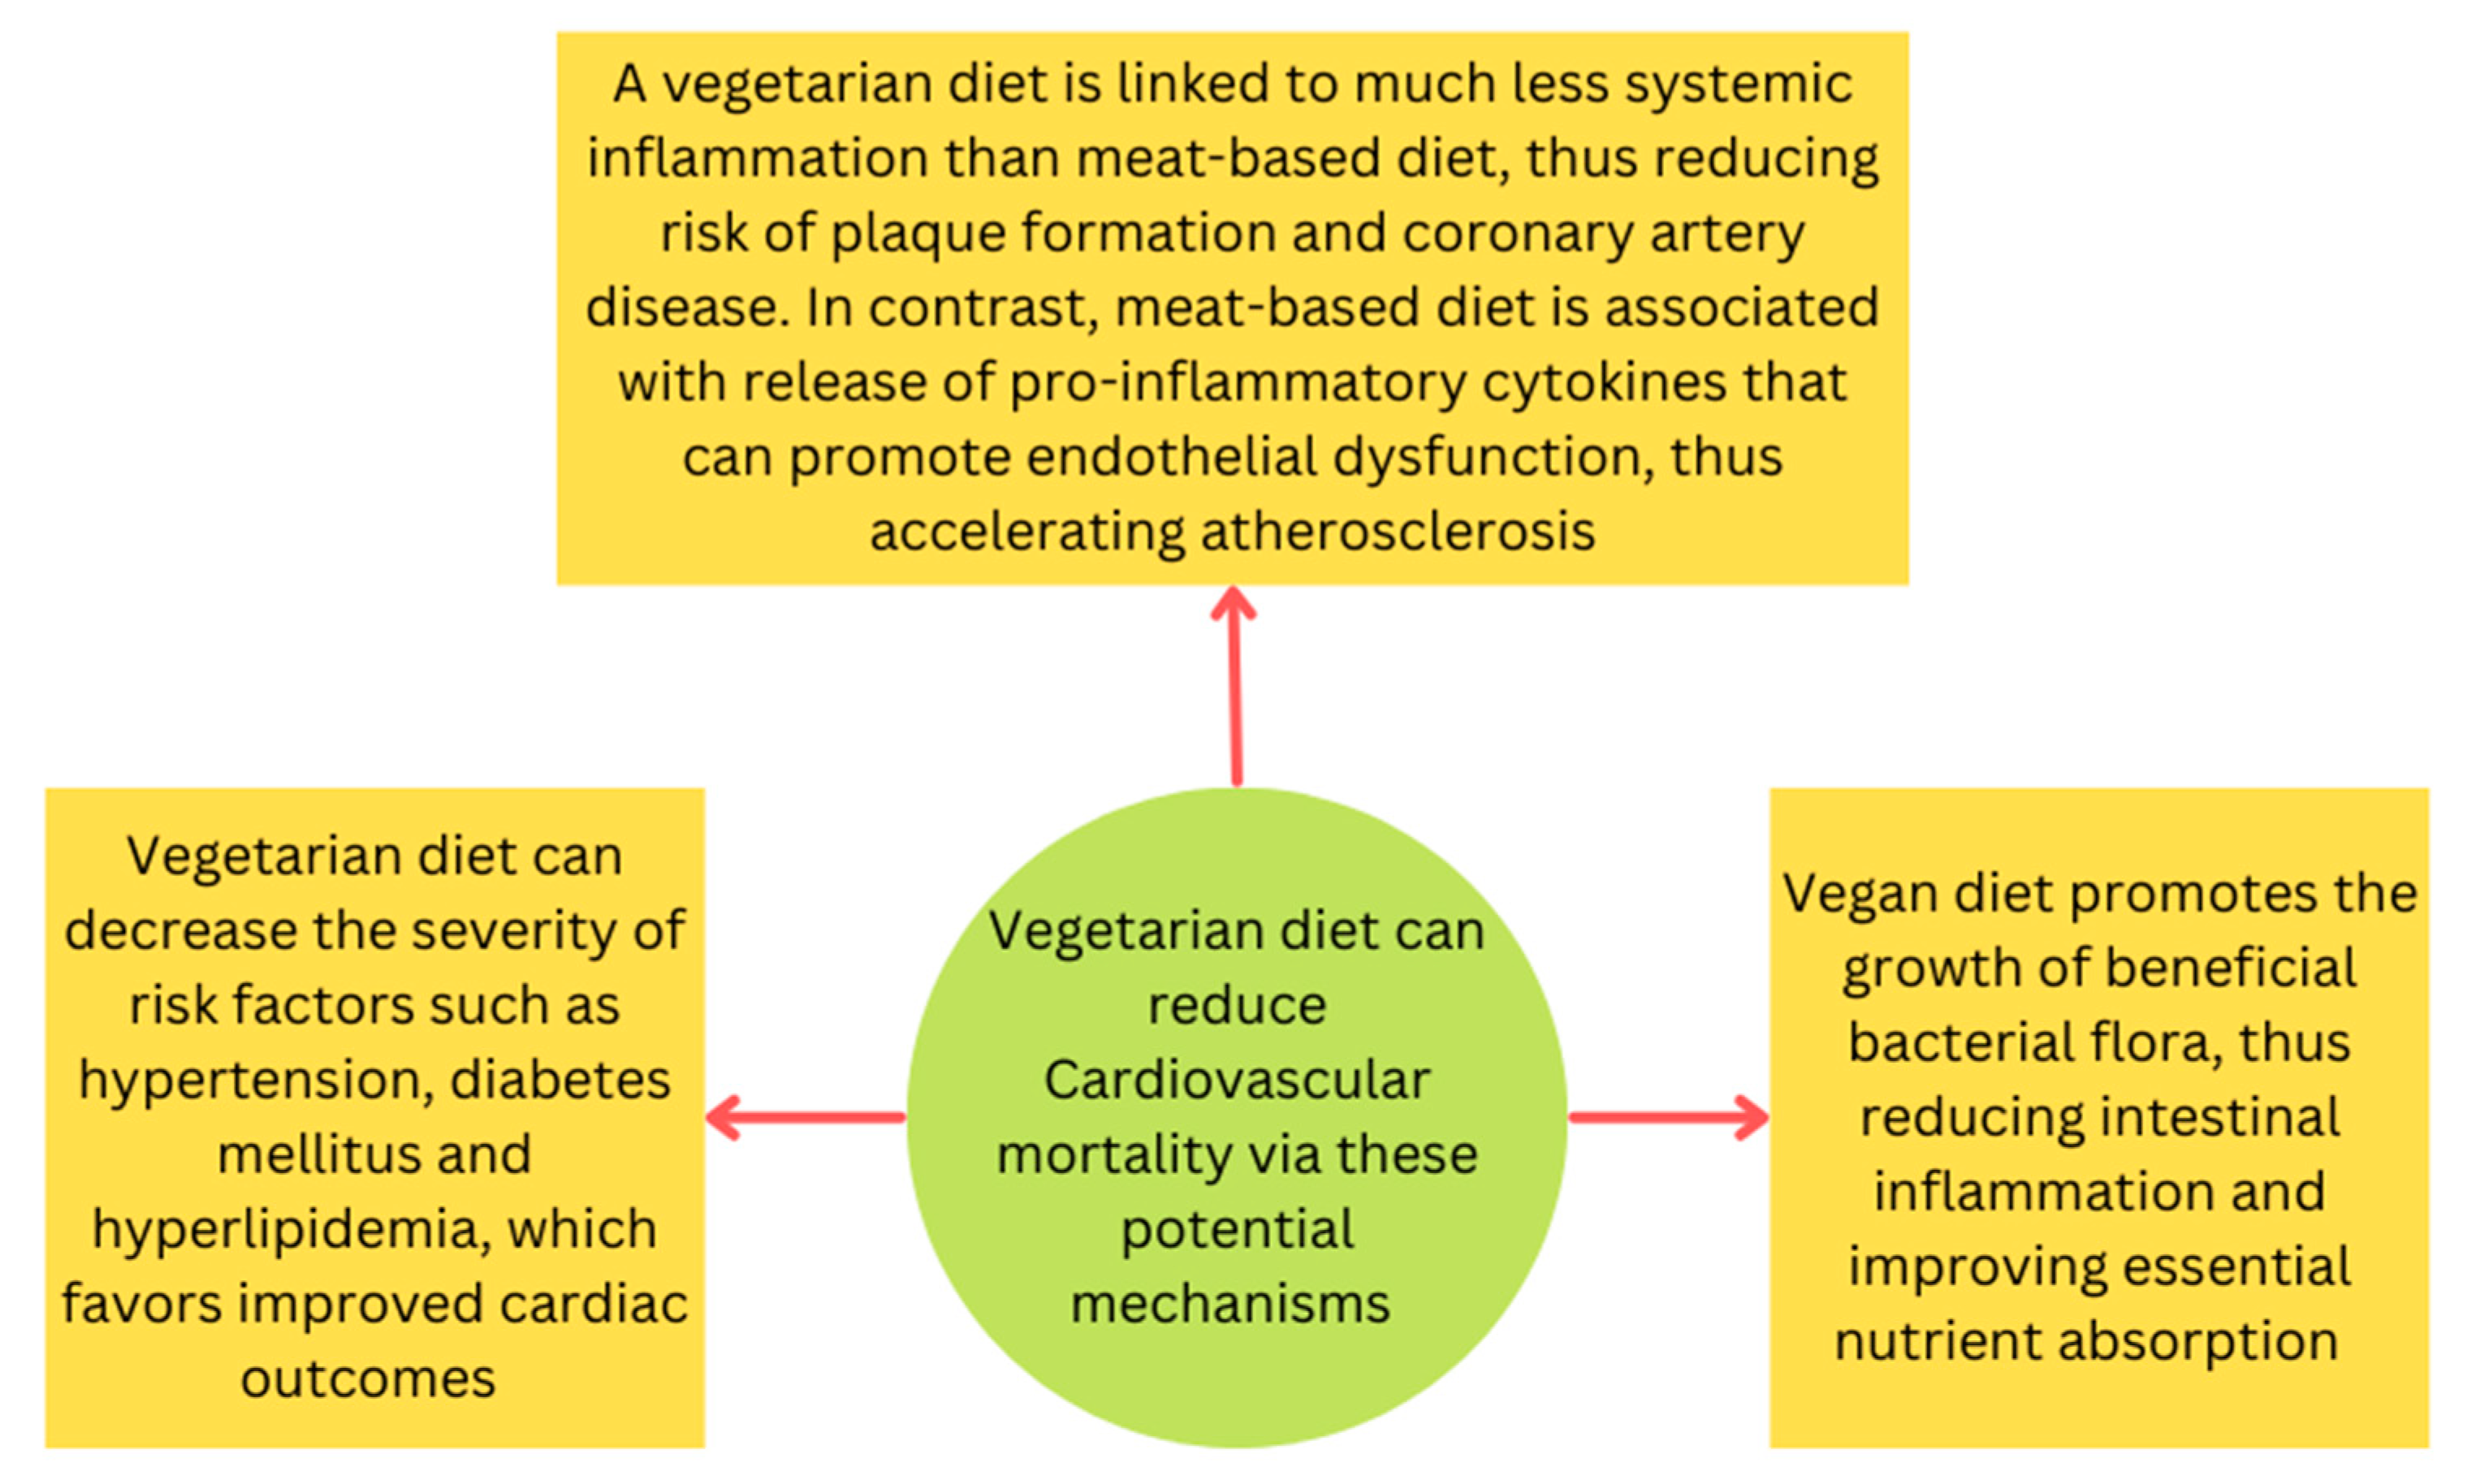 II. Understanding the Relationship between Veganism and Cardiovascular Disease